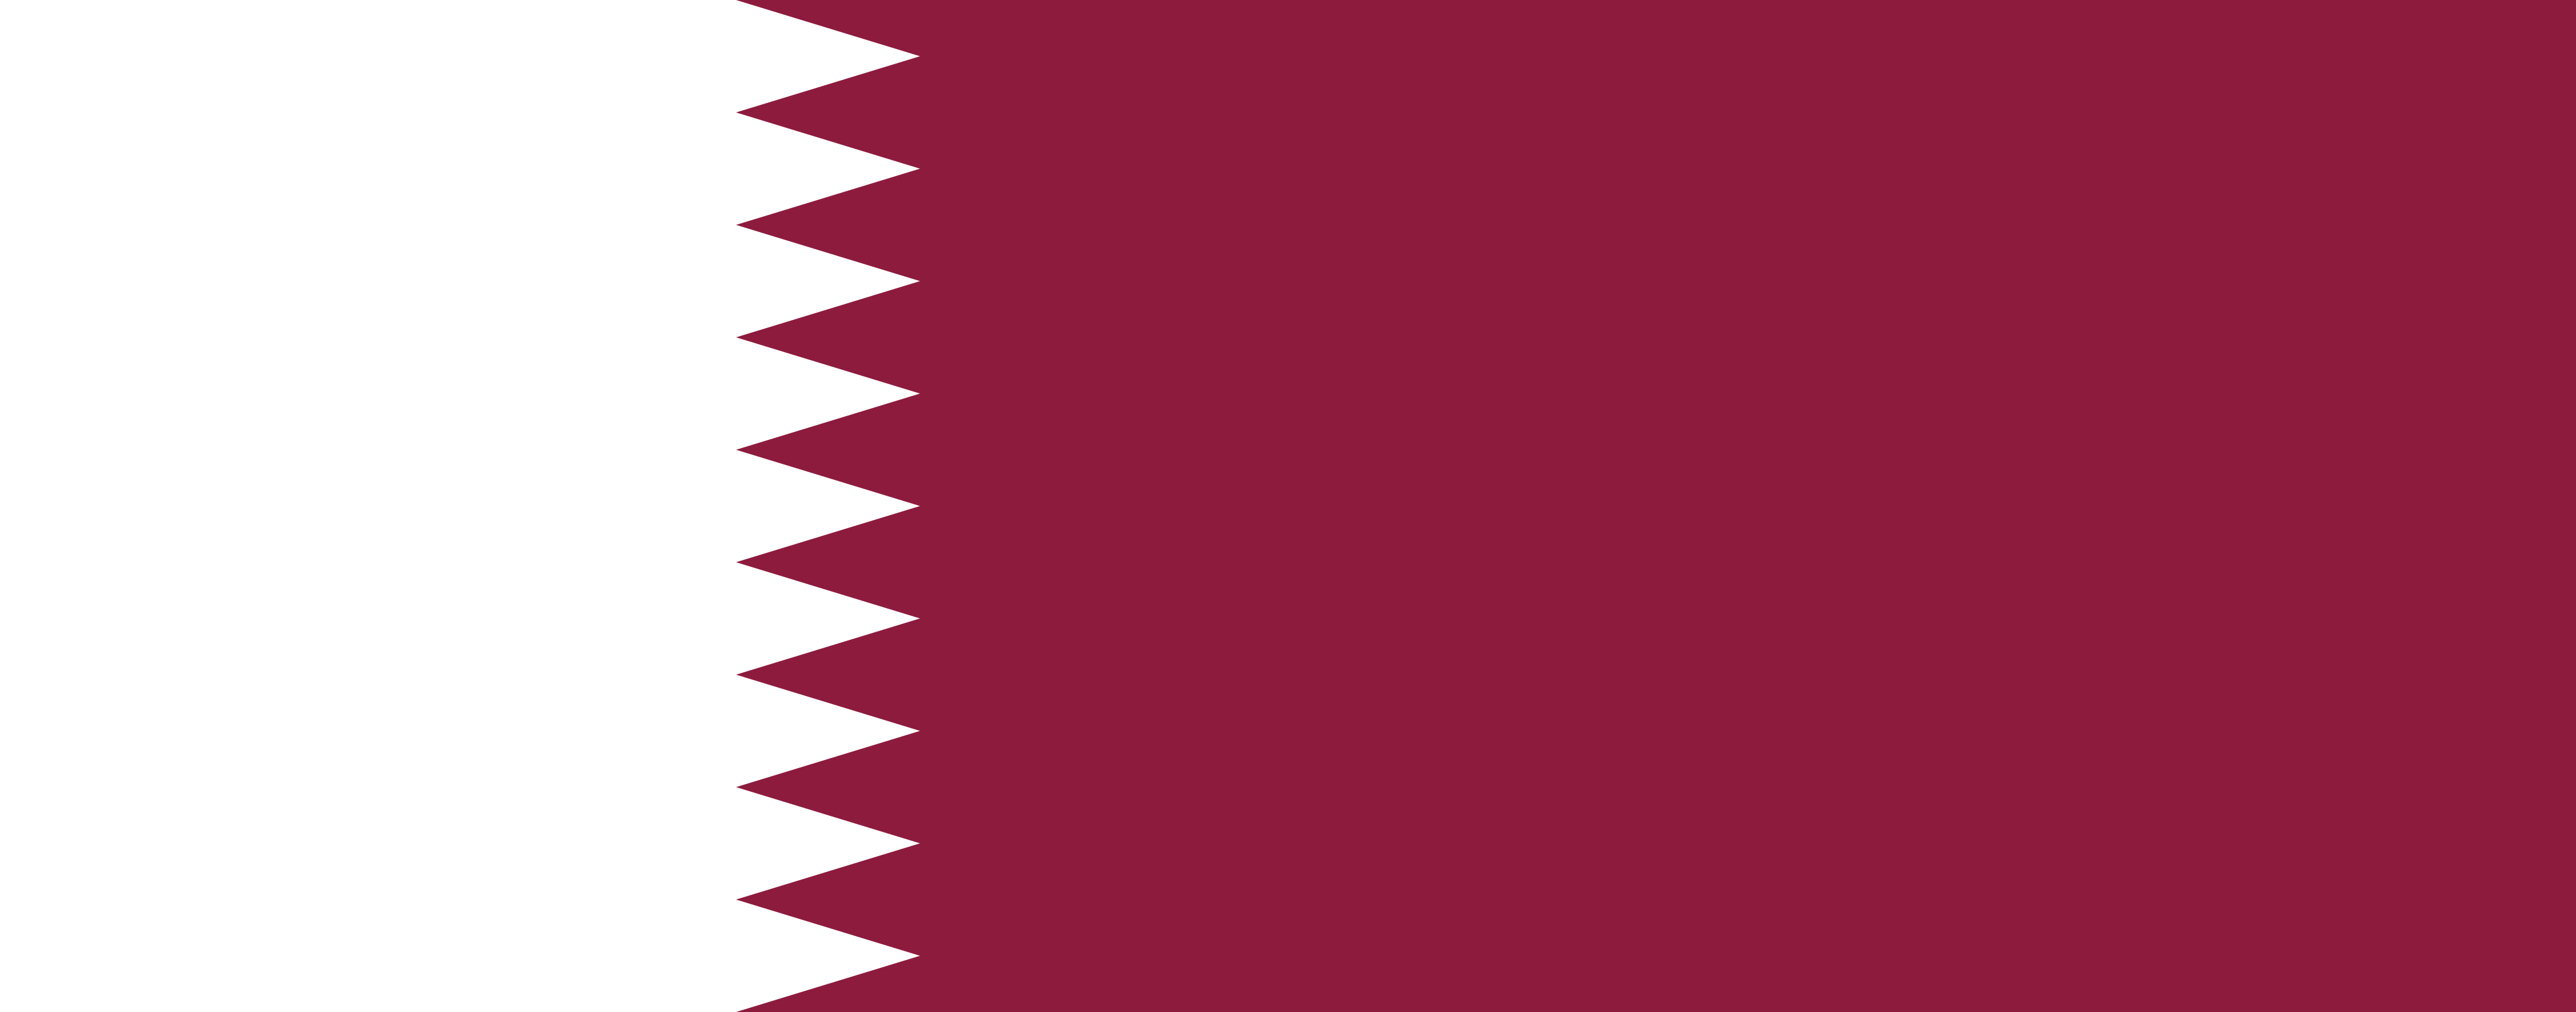 Free Qatar Flag Documents: PDF, DOC, DOCX, HTML & More!